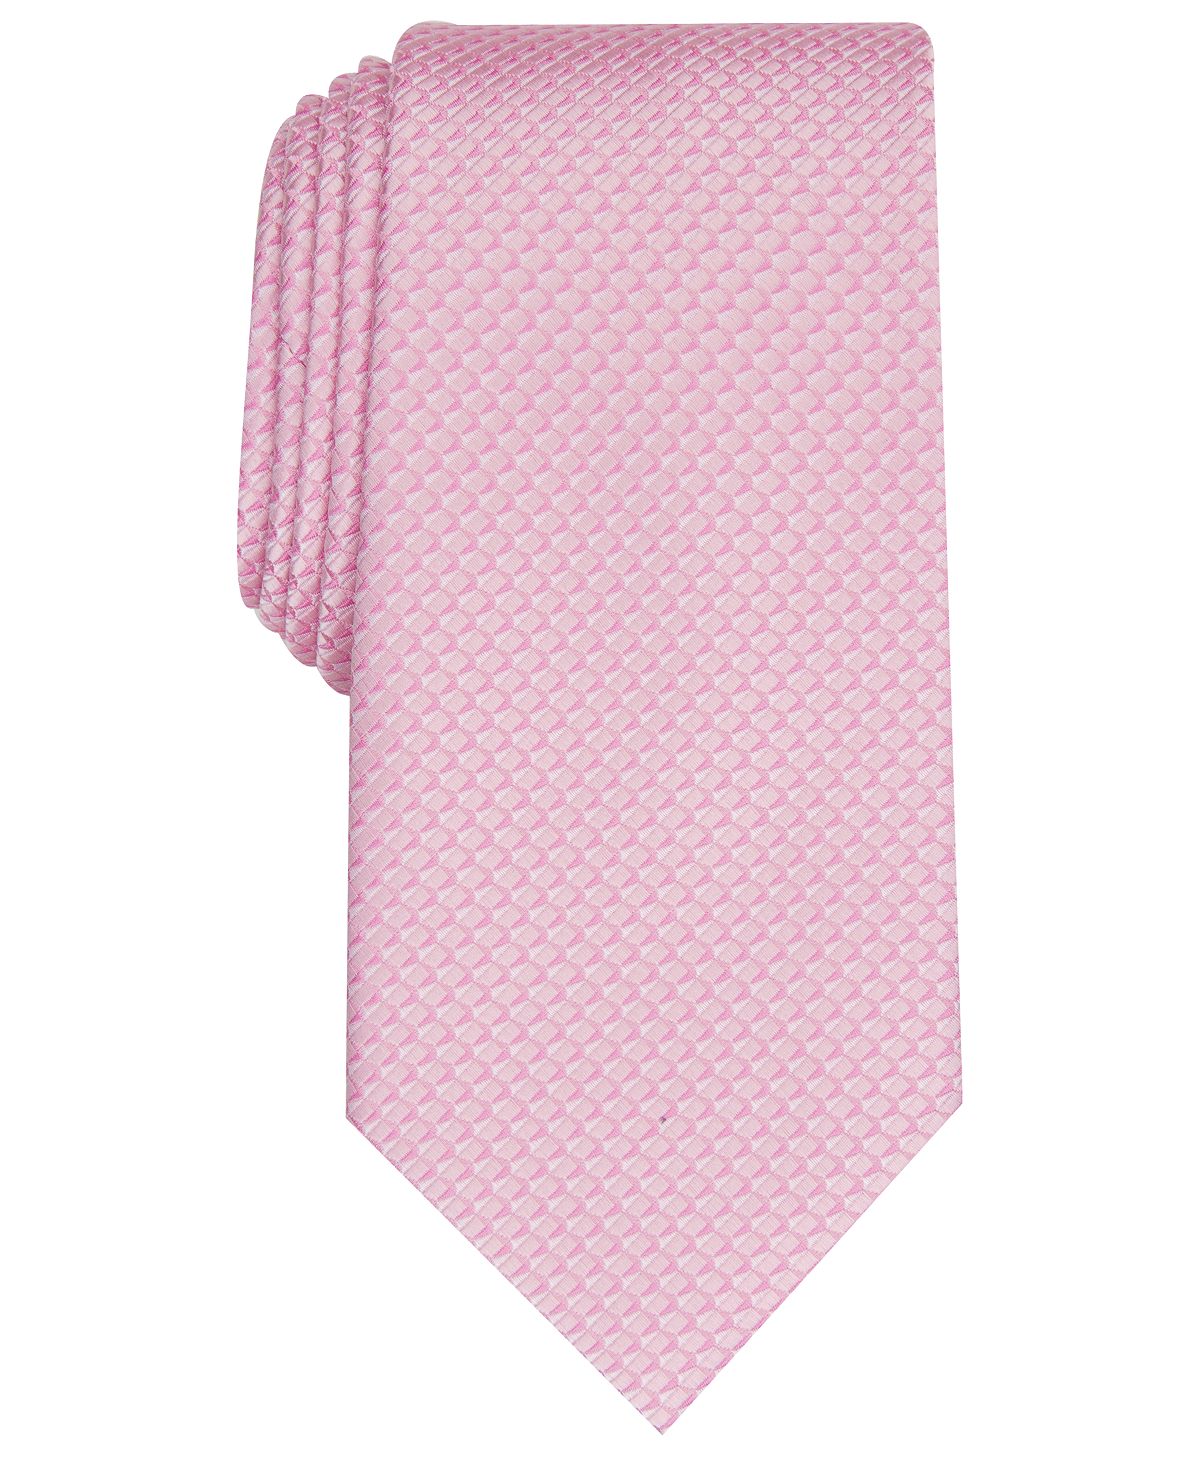 Perry Ellis Rothe Mini Tie Pink